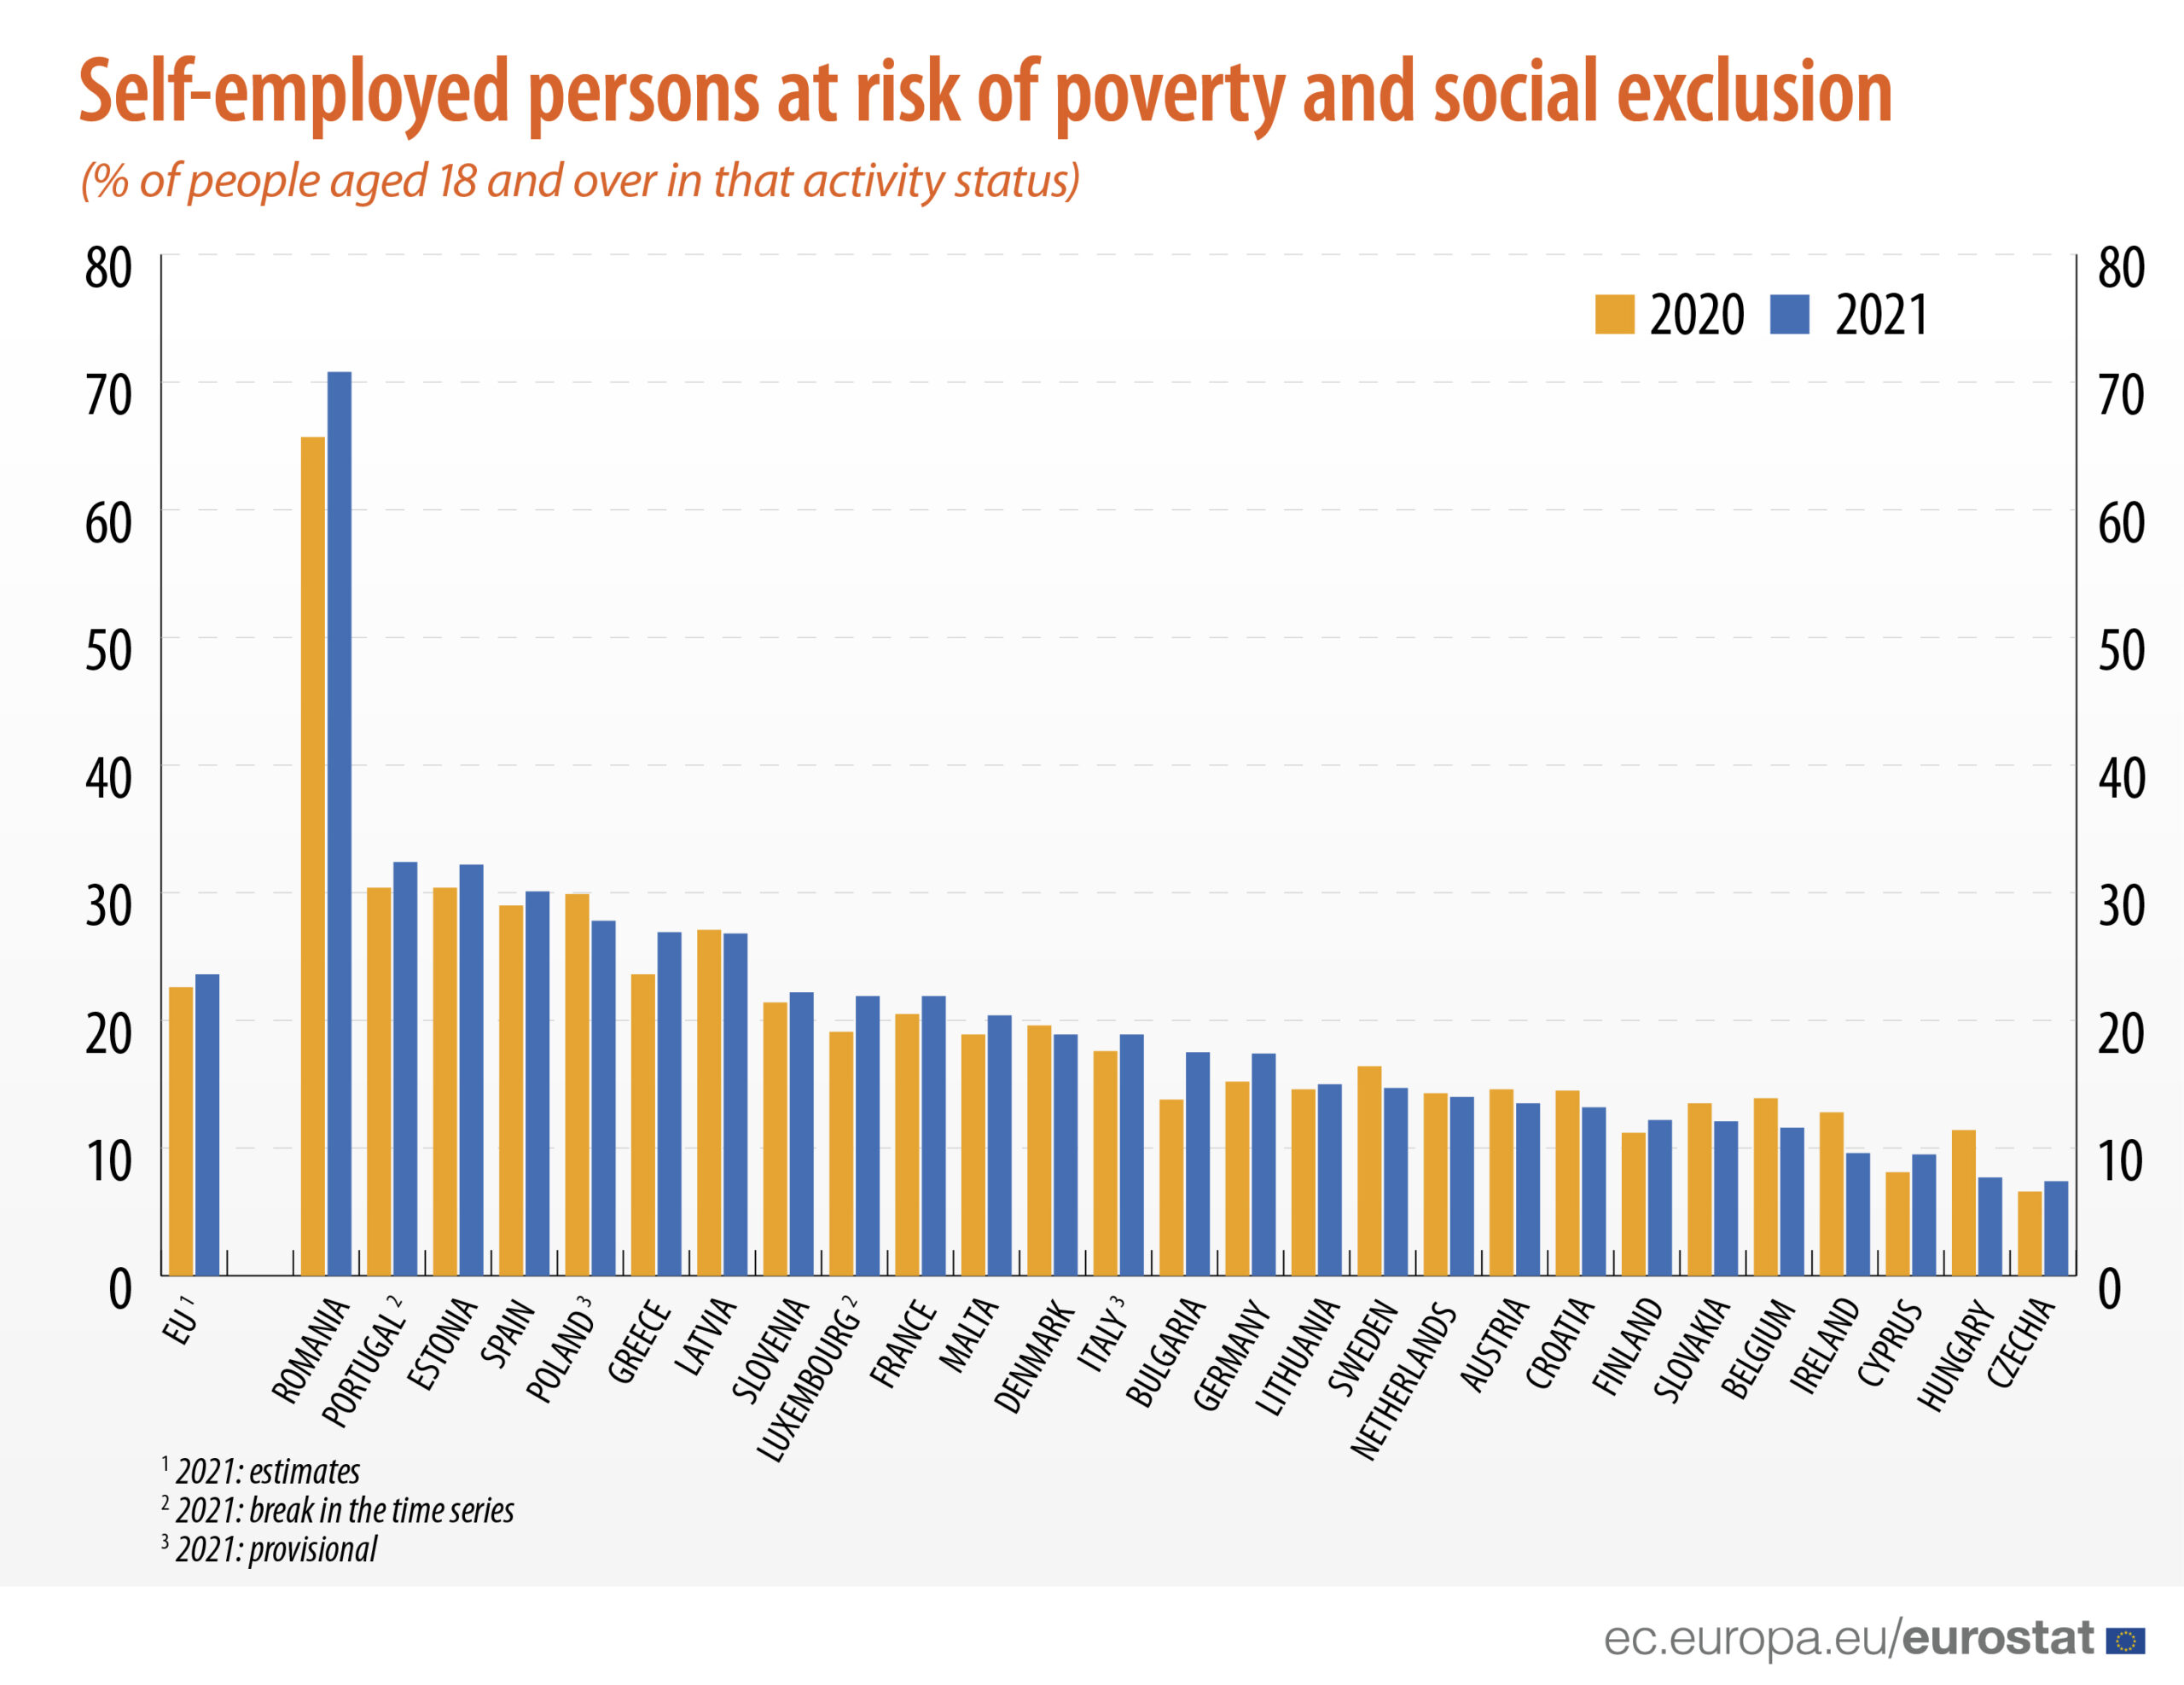 Specific românesc – 70% din liber-profesioniști sub risc de sărăcie, de trei ori mai mult decât media UE